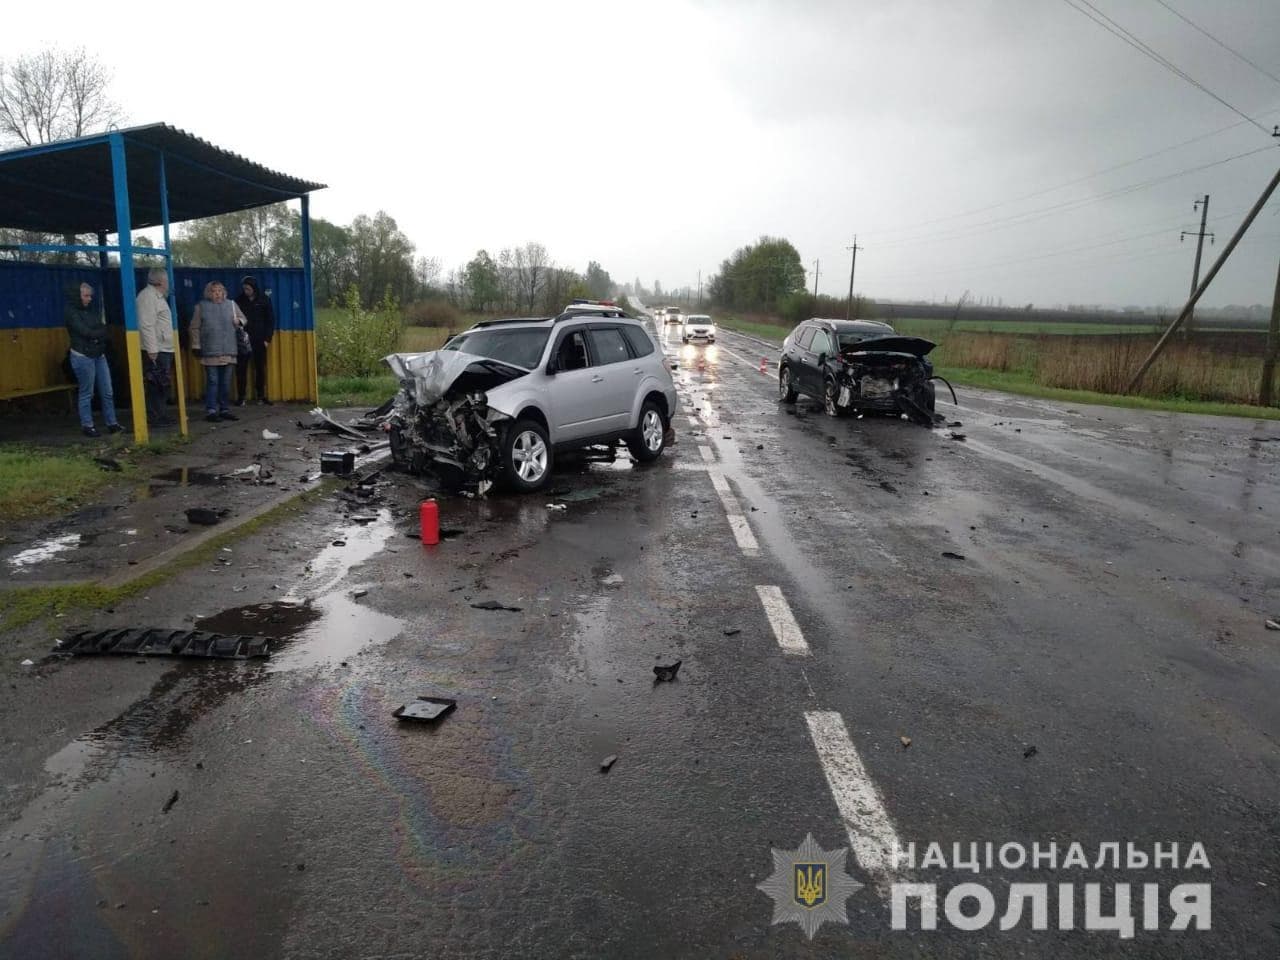 Авария под Харьковом: части машин разбросаны по дороге, есть жертвы (фото, видео)